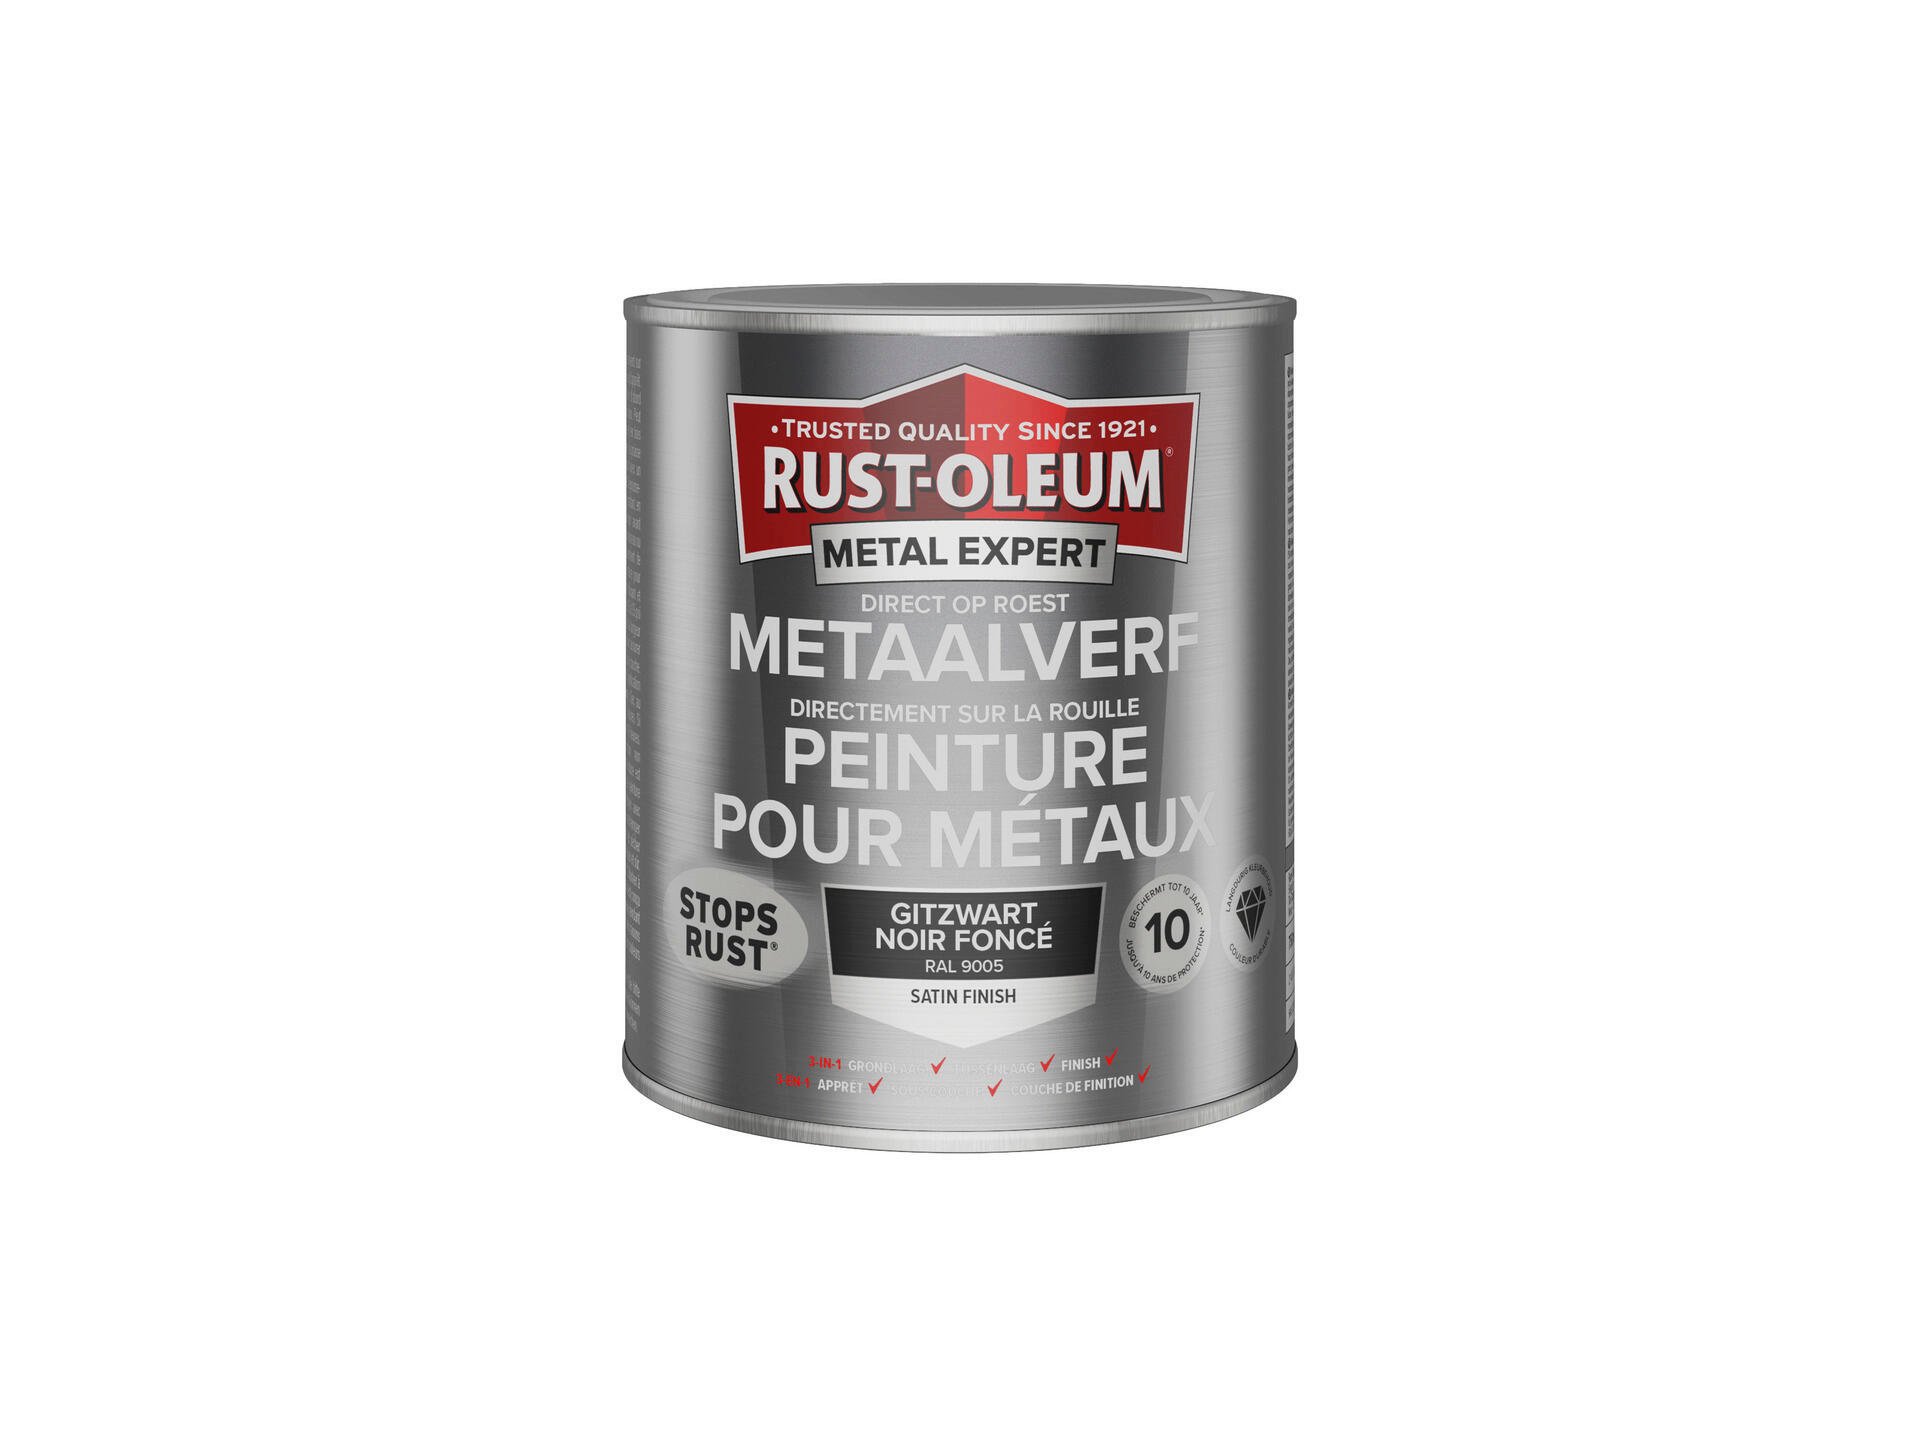 Rust-oleum Metal Expert peinture pour métaux satin 750ml noir foncé